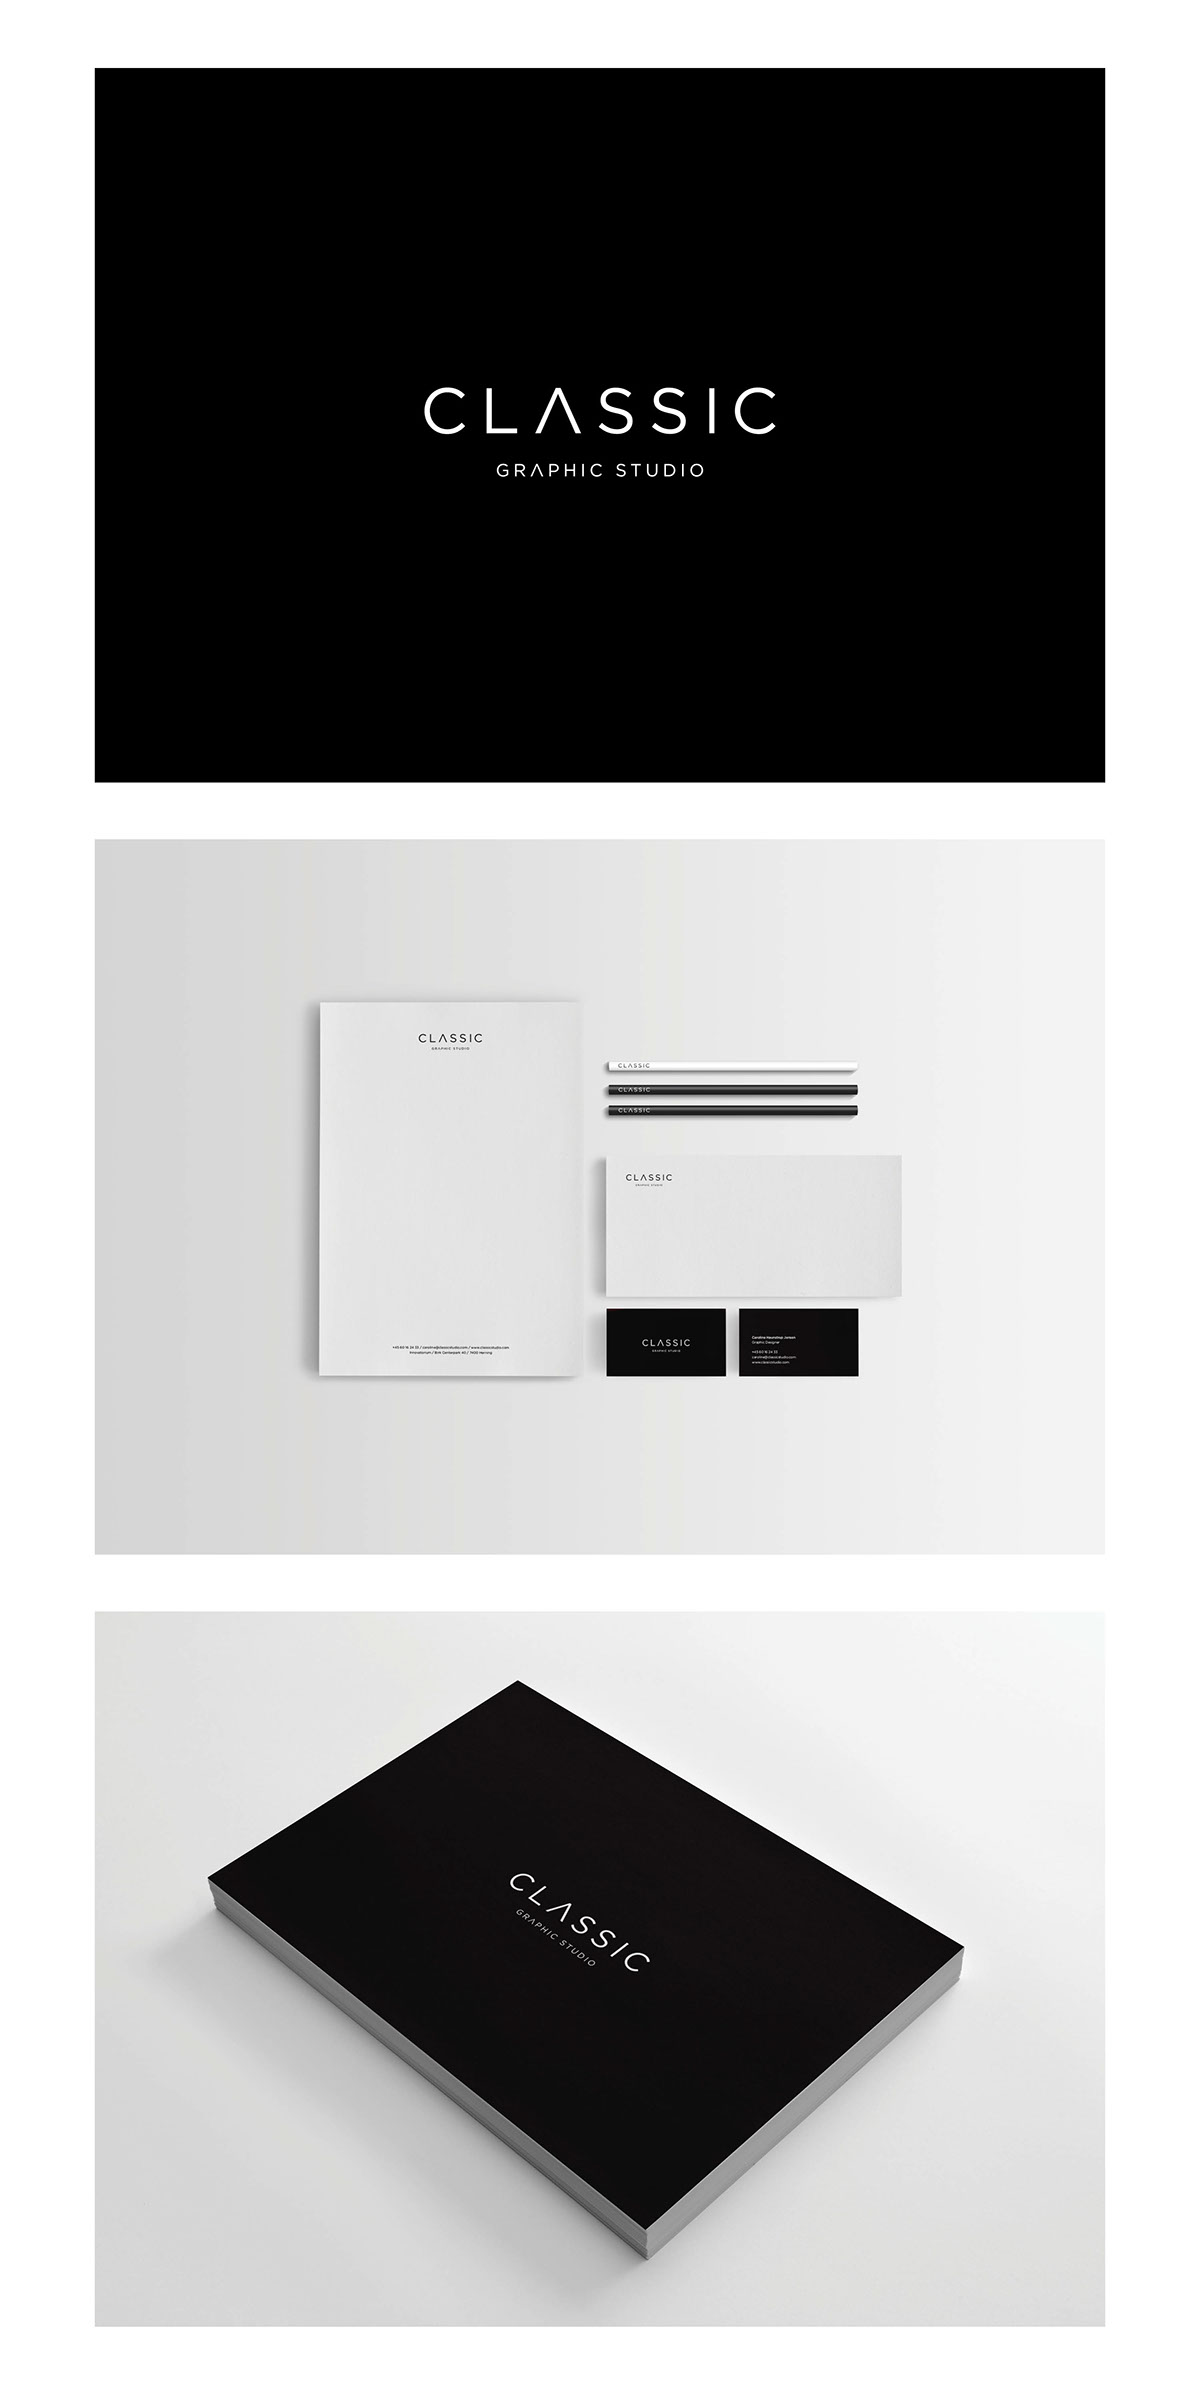 Classic Studio School projekt  Graphic Designer black and white graphic studio visit card gotham